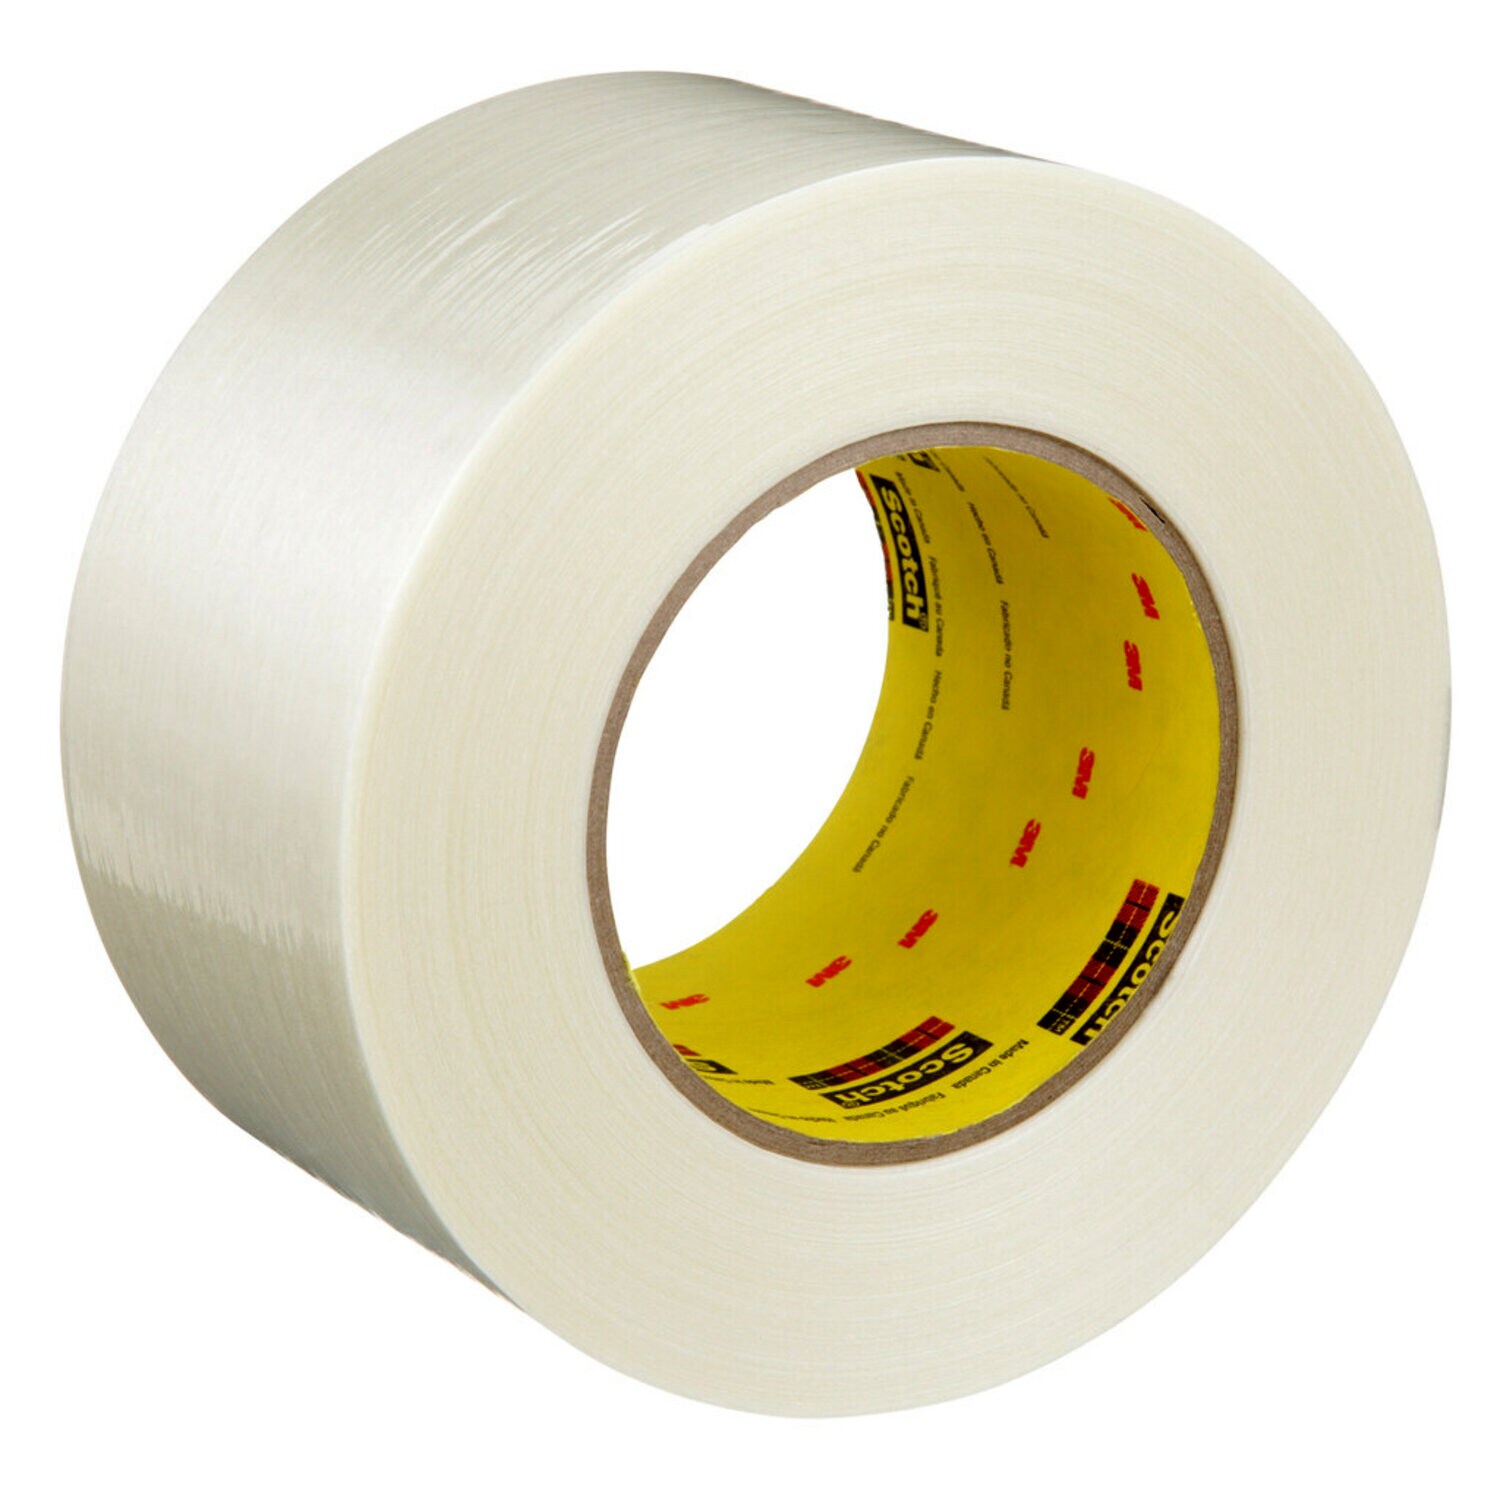 7000123795 - Scotch Filament Tape 898, Clear, 72 mm x 55 m, 6.6 mil, 12 rolls per
case